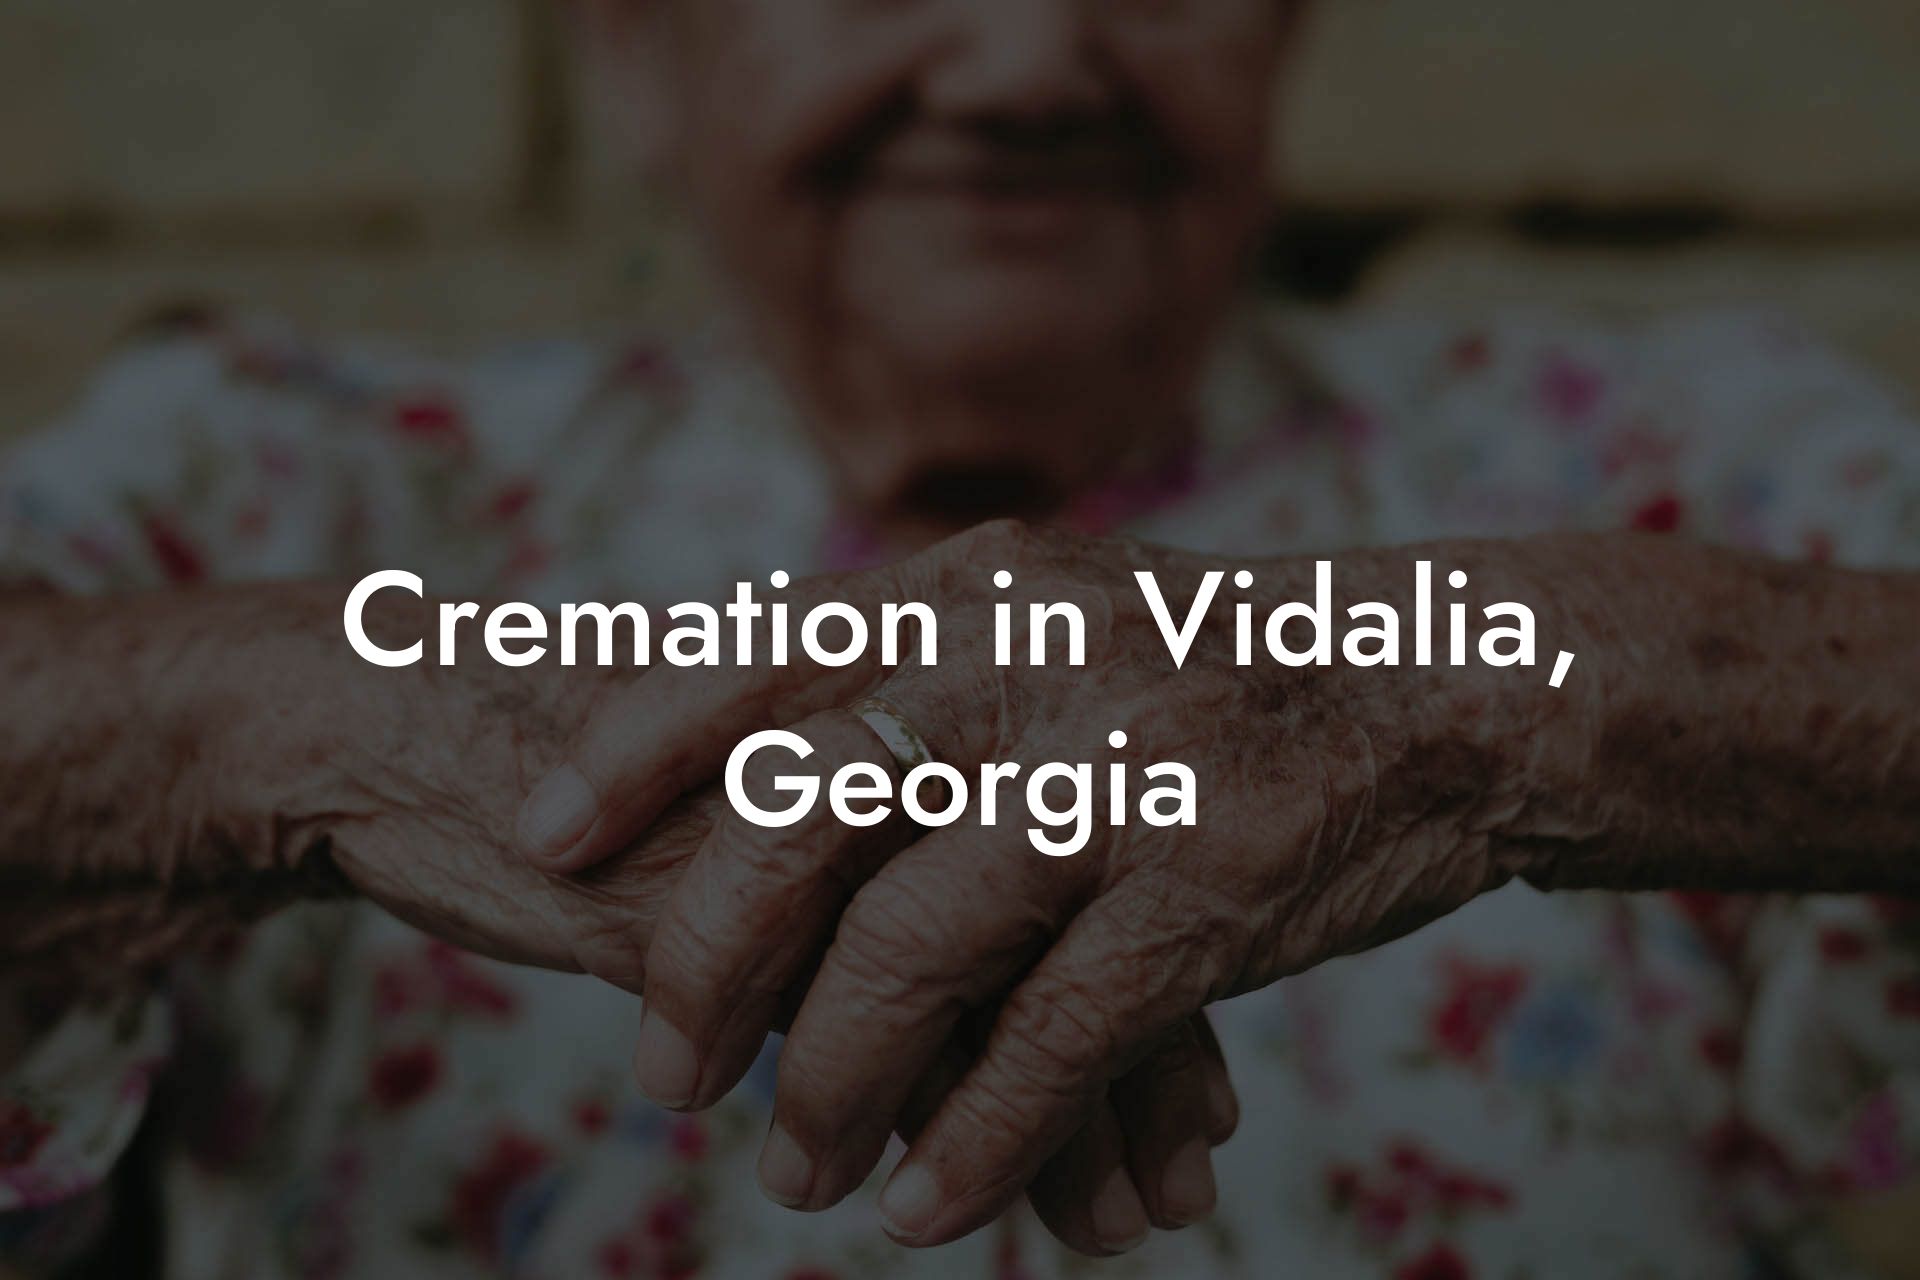 Cremation in Vidalia, Georgia